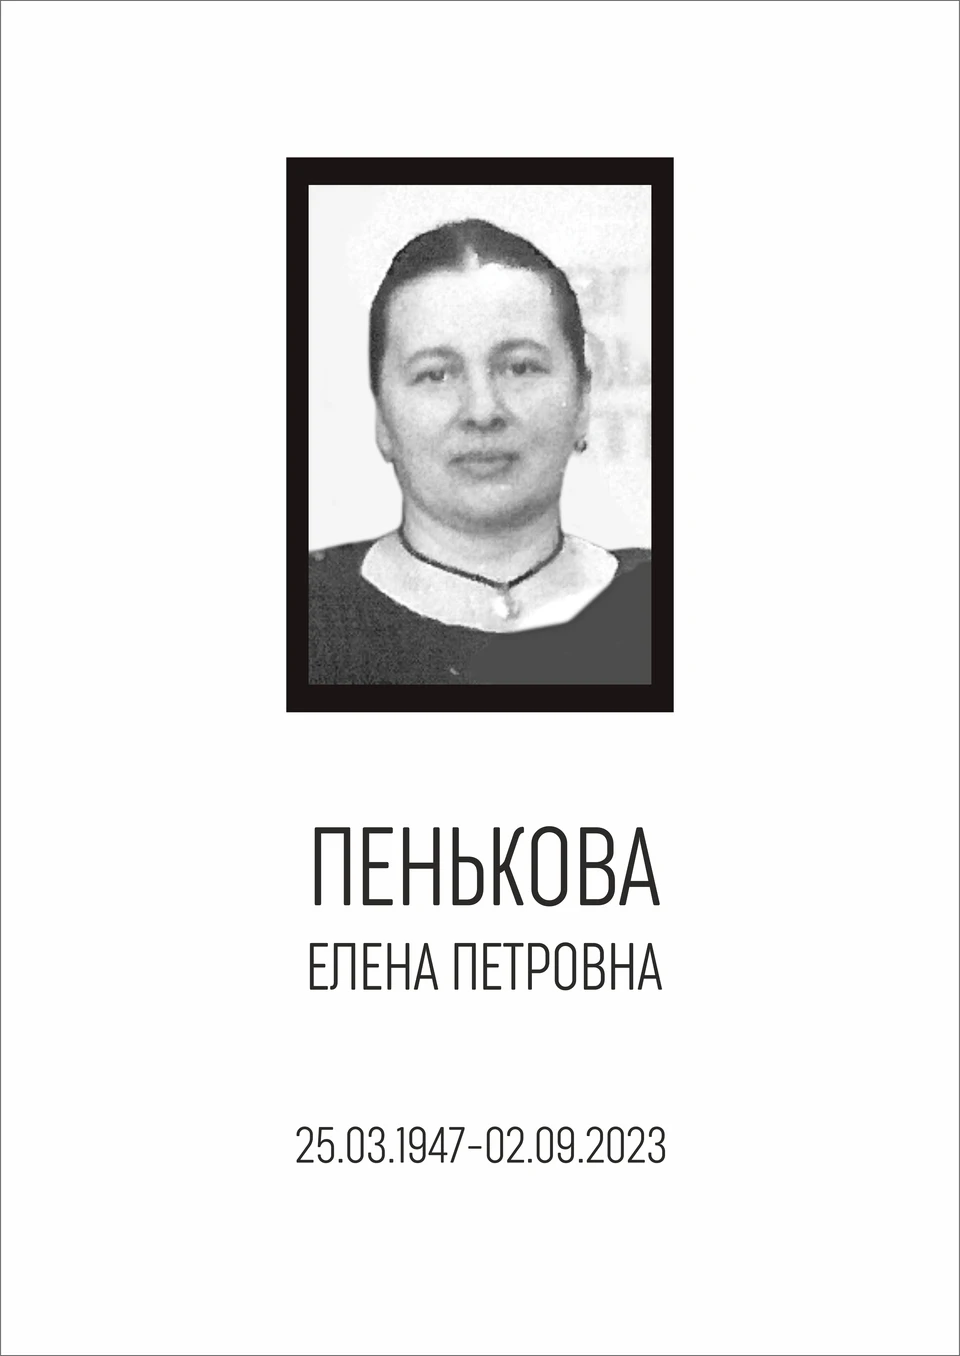 Елена Пенькова работала в училище со дня его открытия.